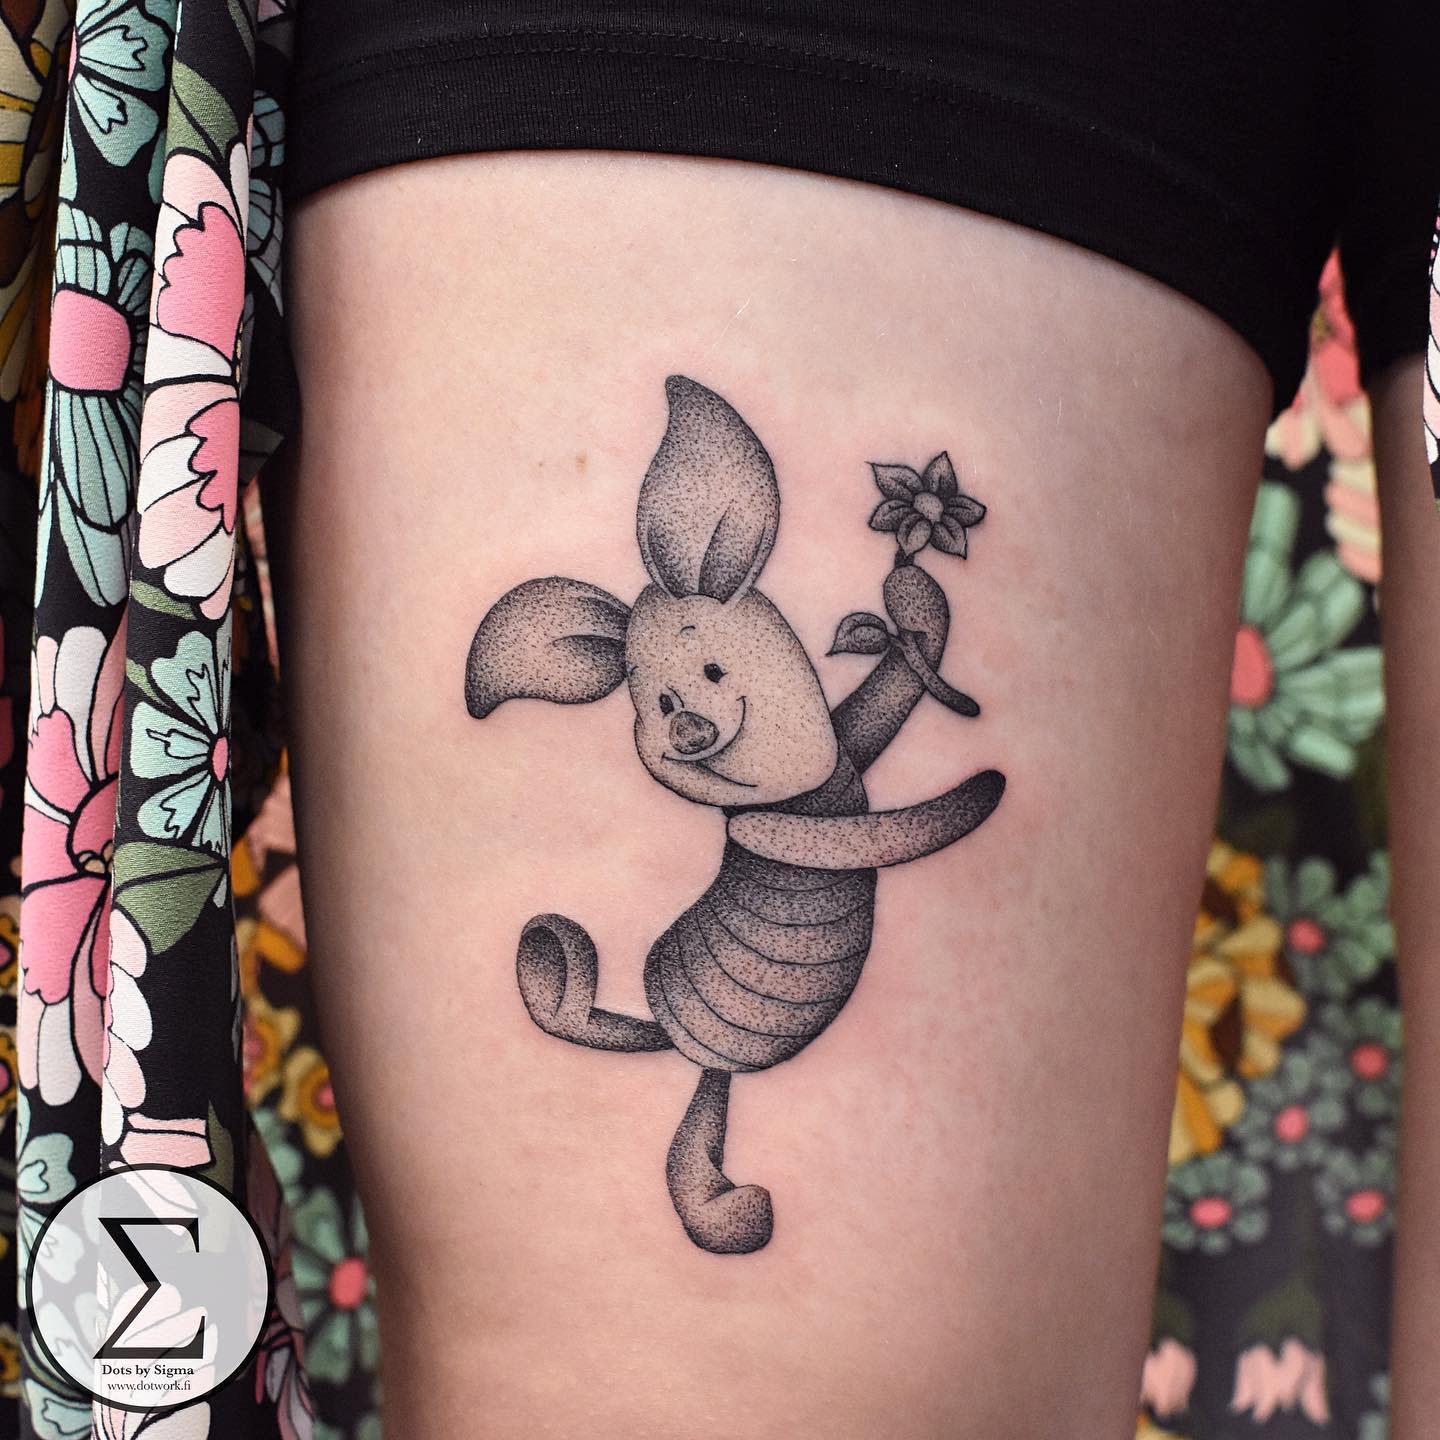 Tatuaje Piglet Winnie the Pooh -dotsbysigma